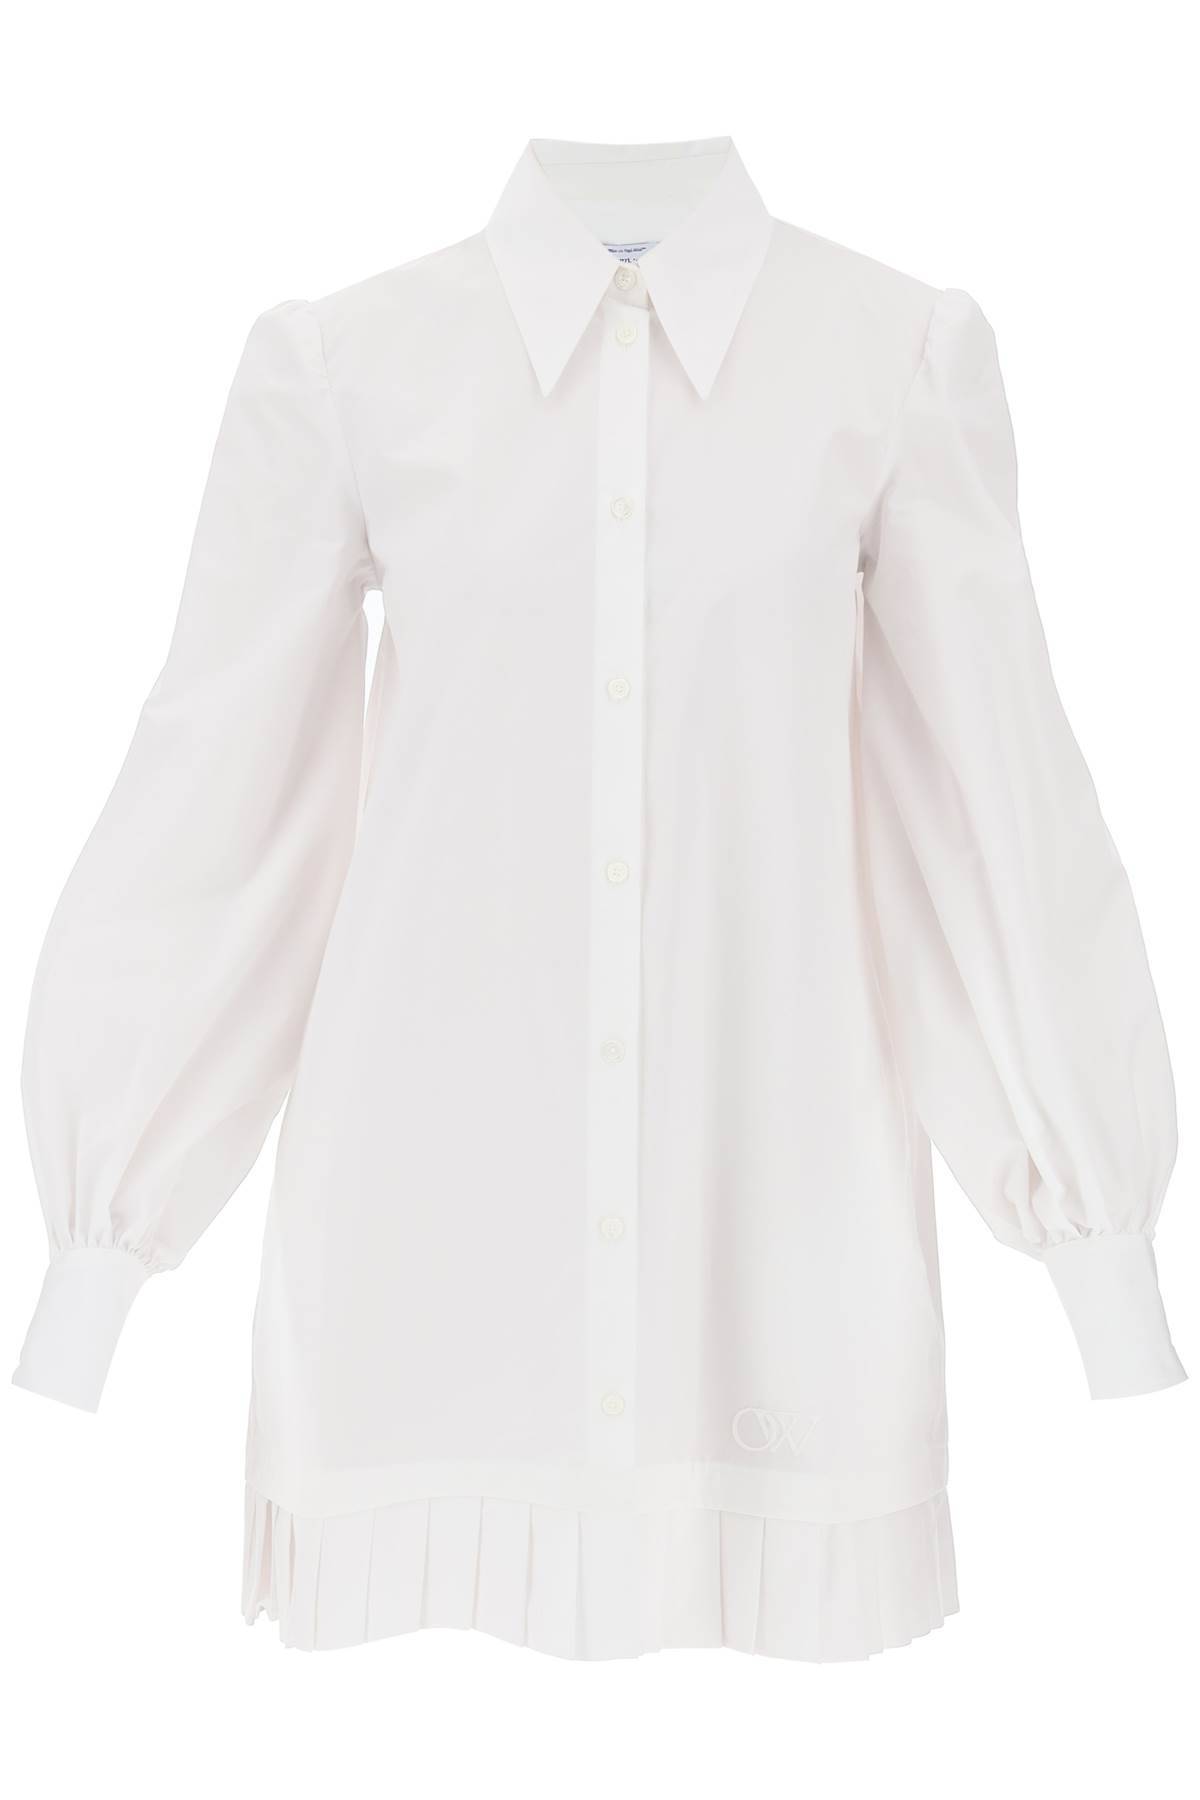 OFF-WHITE OFF-WHITE mini shirt dress